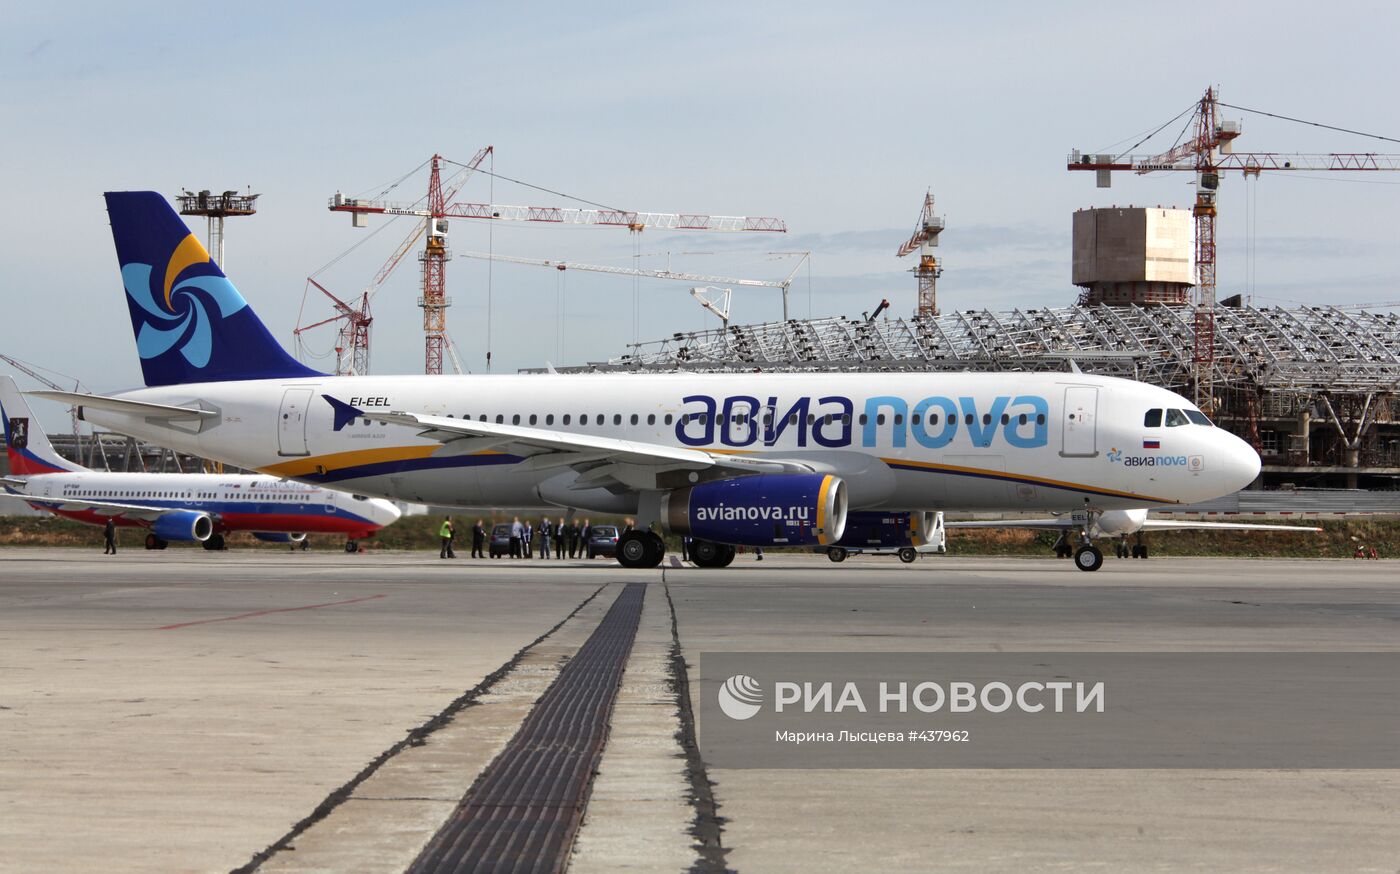 Первый самолет авиакомпании "Авиаnova" вылетел из Москвыы в Сочи